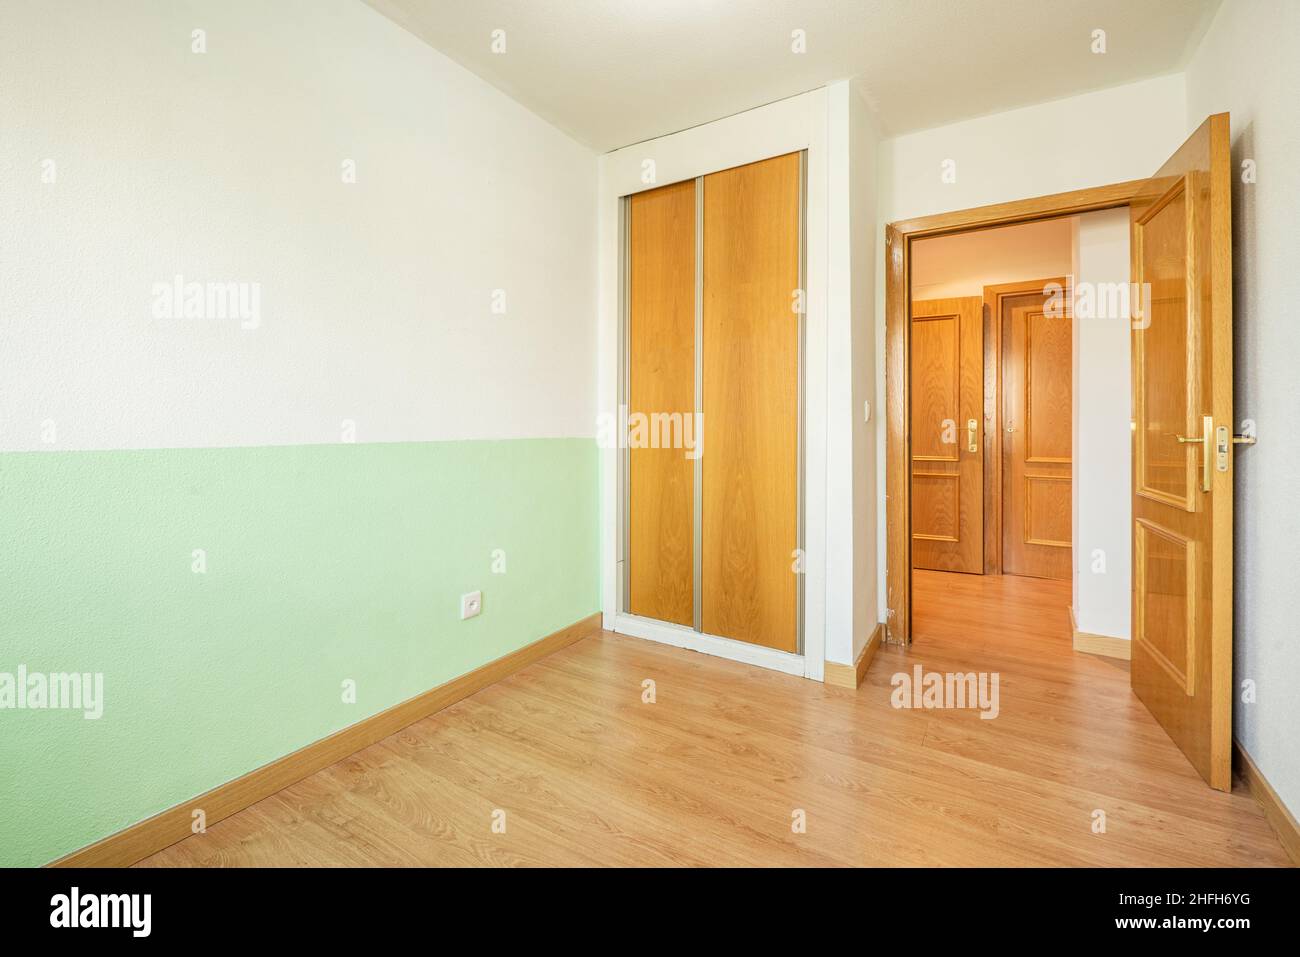 Camera con parete dipinta in due tonalità, armadio con porte scorrevoli in legno e carpenteria in rovere su pavimenti e porte. Foto Stock